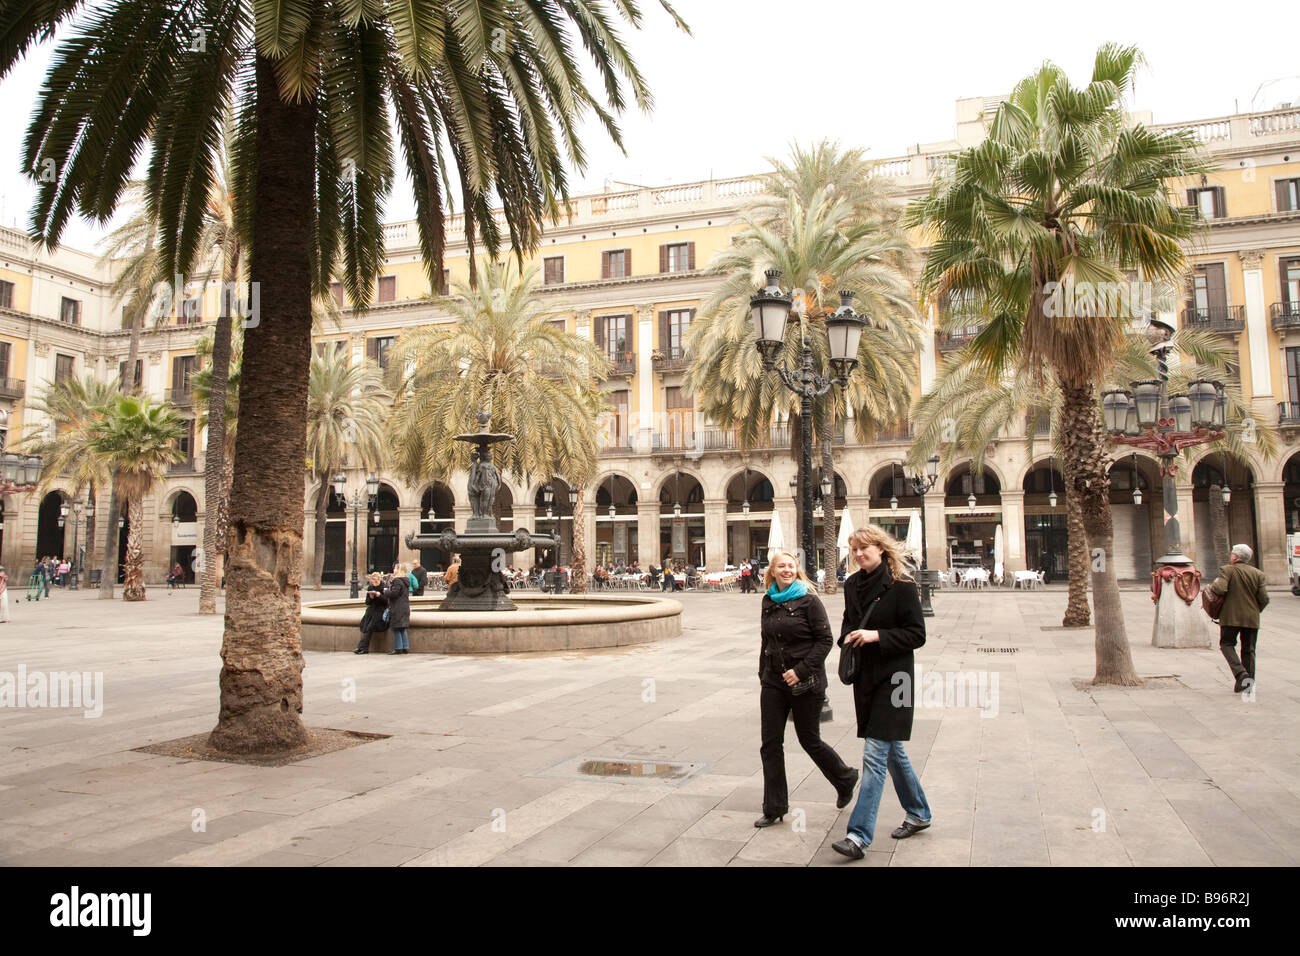 Placa Reial, La Rambla, Barcelone Sapin Banque D'Images